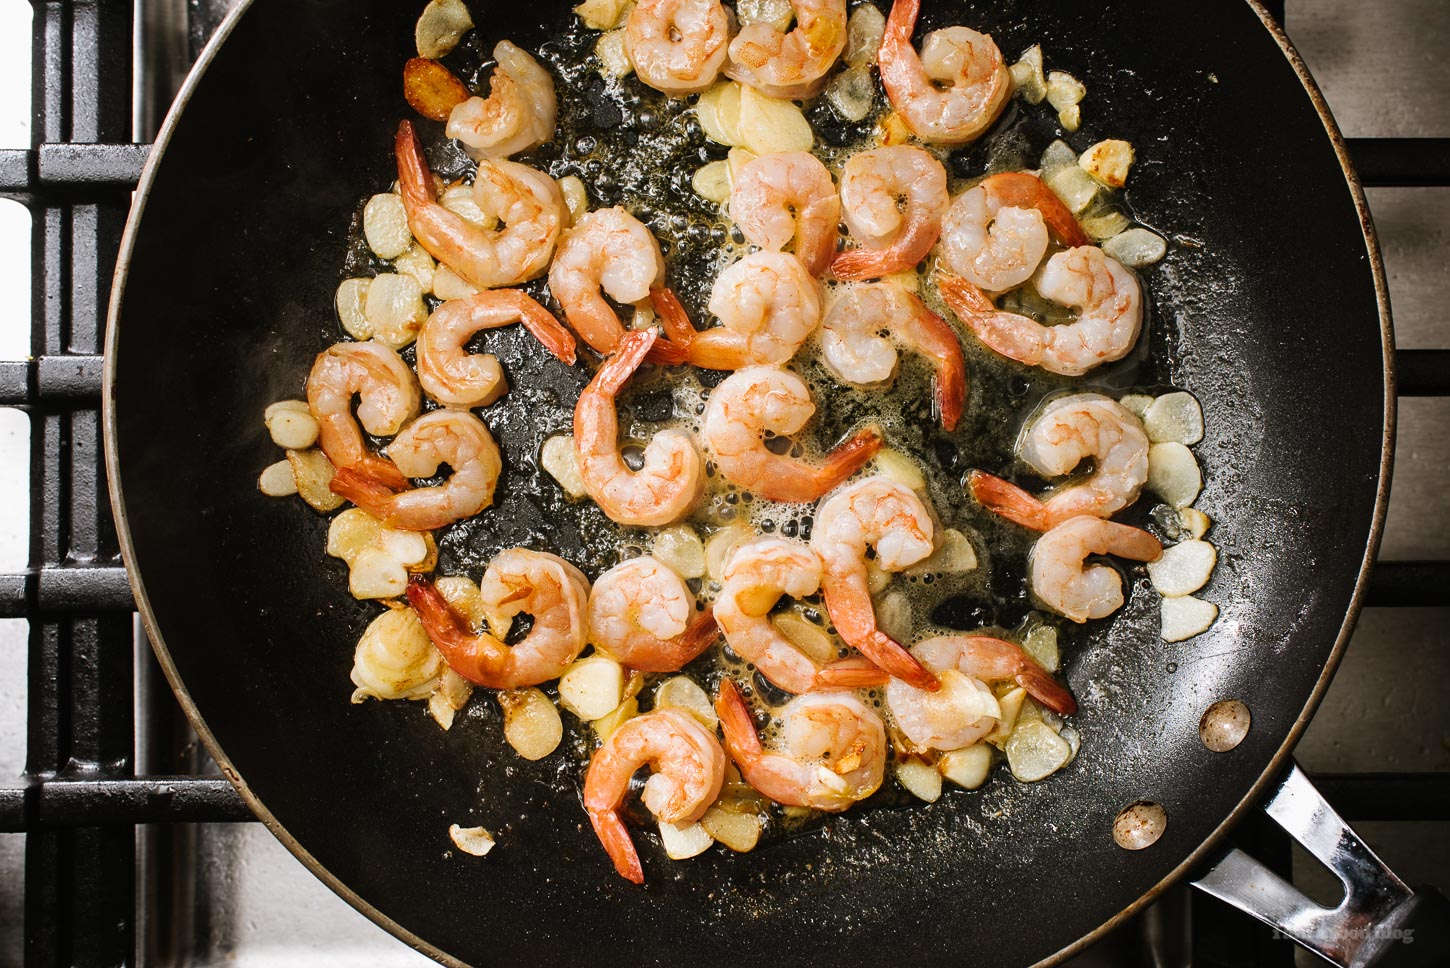 Easy 15 Minute Garlic Shrimp Scampi Chow Fun Noodles Recipe | www.iamafoodblog.com